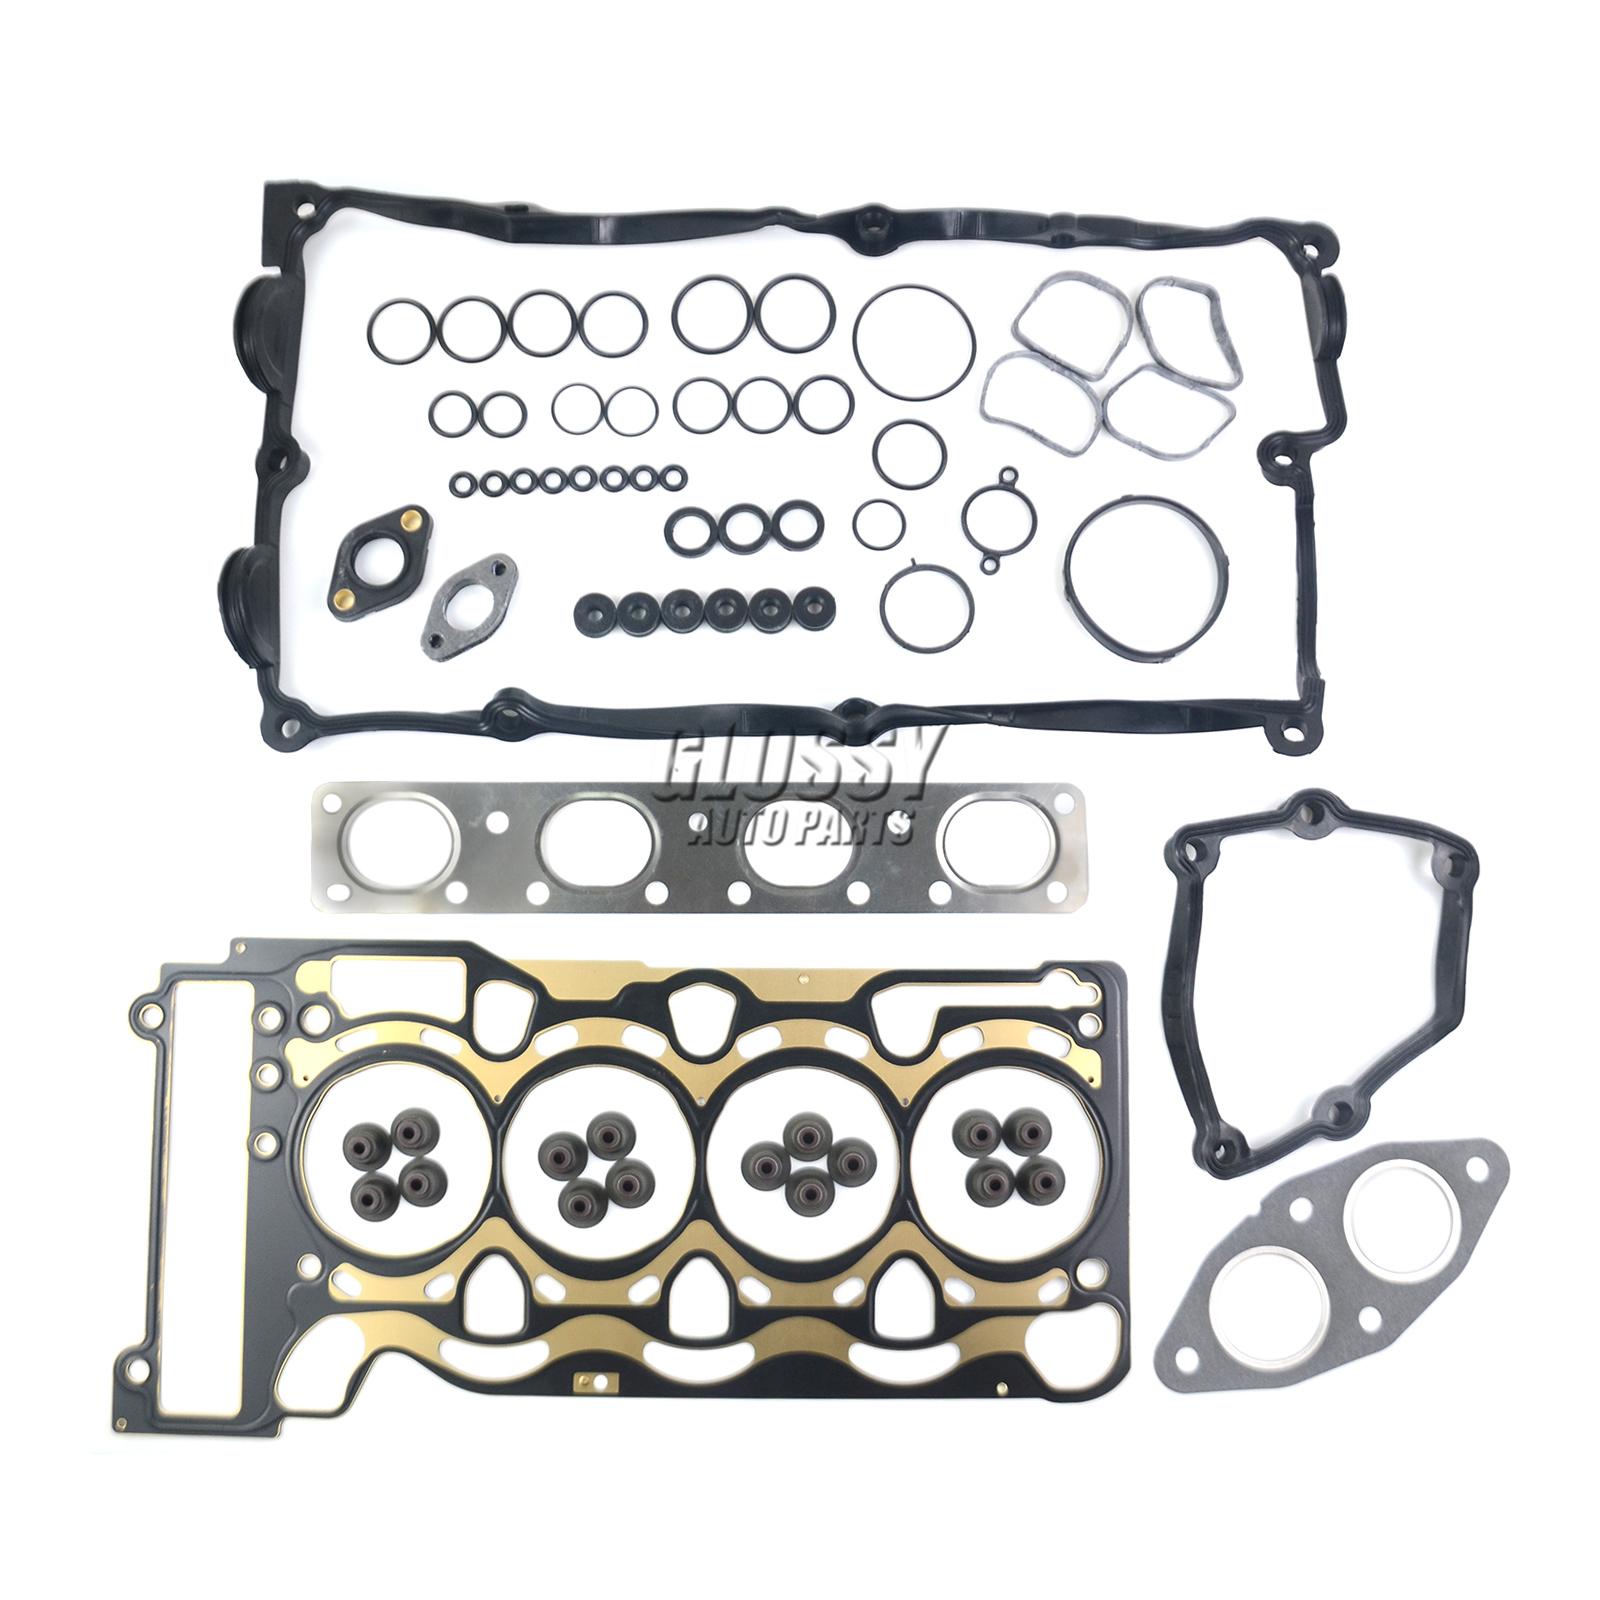 AP03 Engine Cylinder Head Gasket Set For BMW N46 N43 N45 X1 X3 Z4 E81 E87 E88 E82 E46 E90 E93 E91 E84 E83 E85